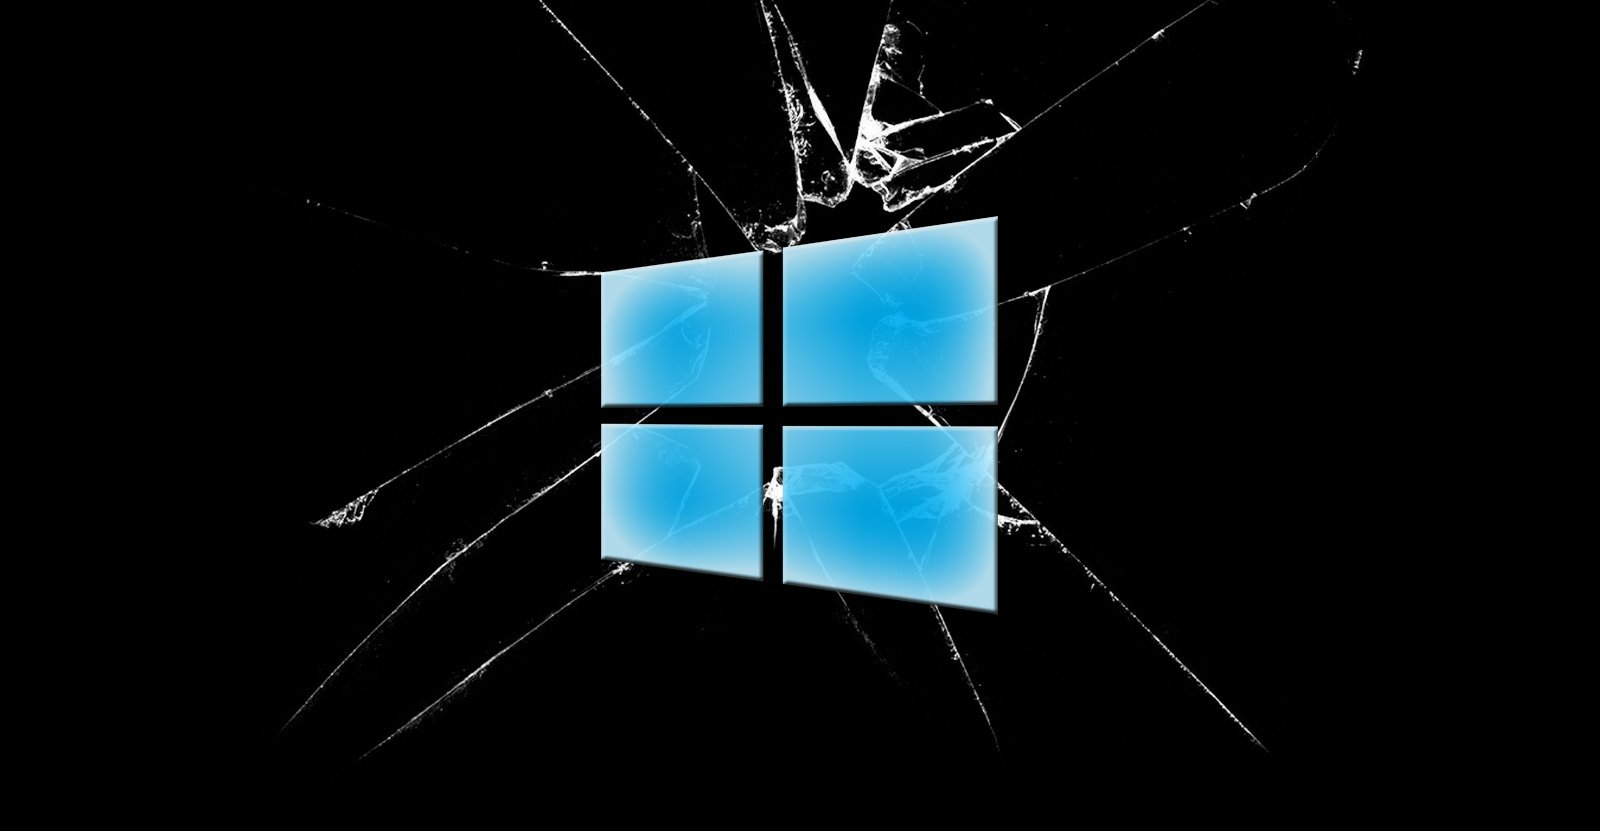 Windows KB5012170 update causing BitLocker recovery screens, boot issues - BleepingComputer